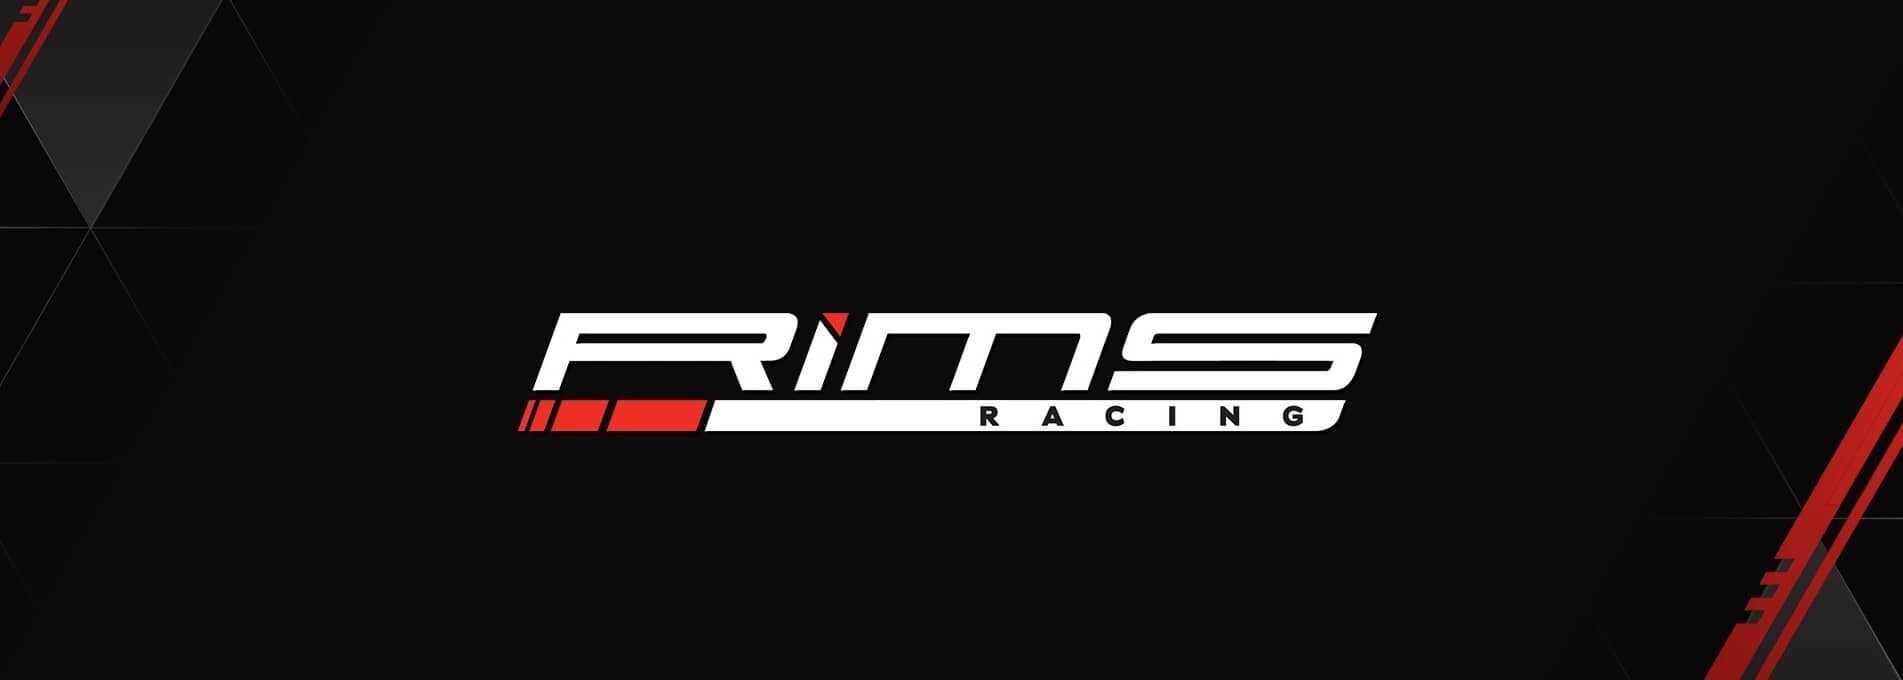 RiMS Racing - náhledovka